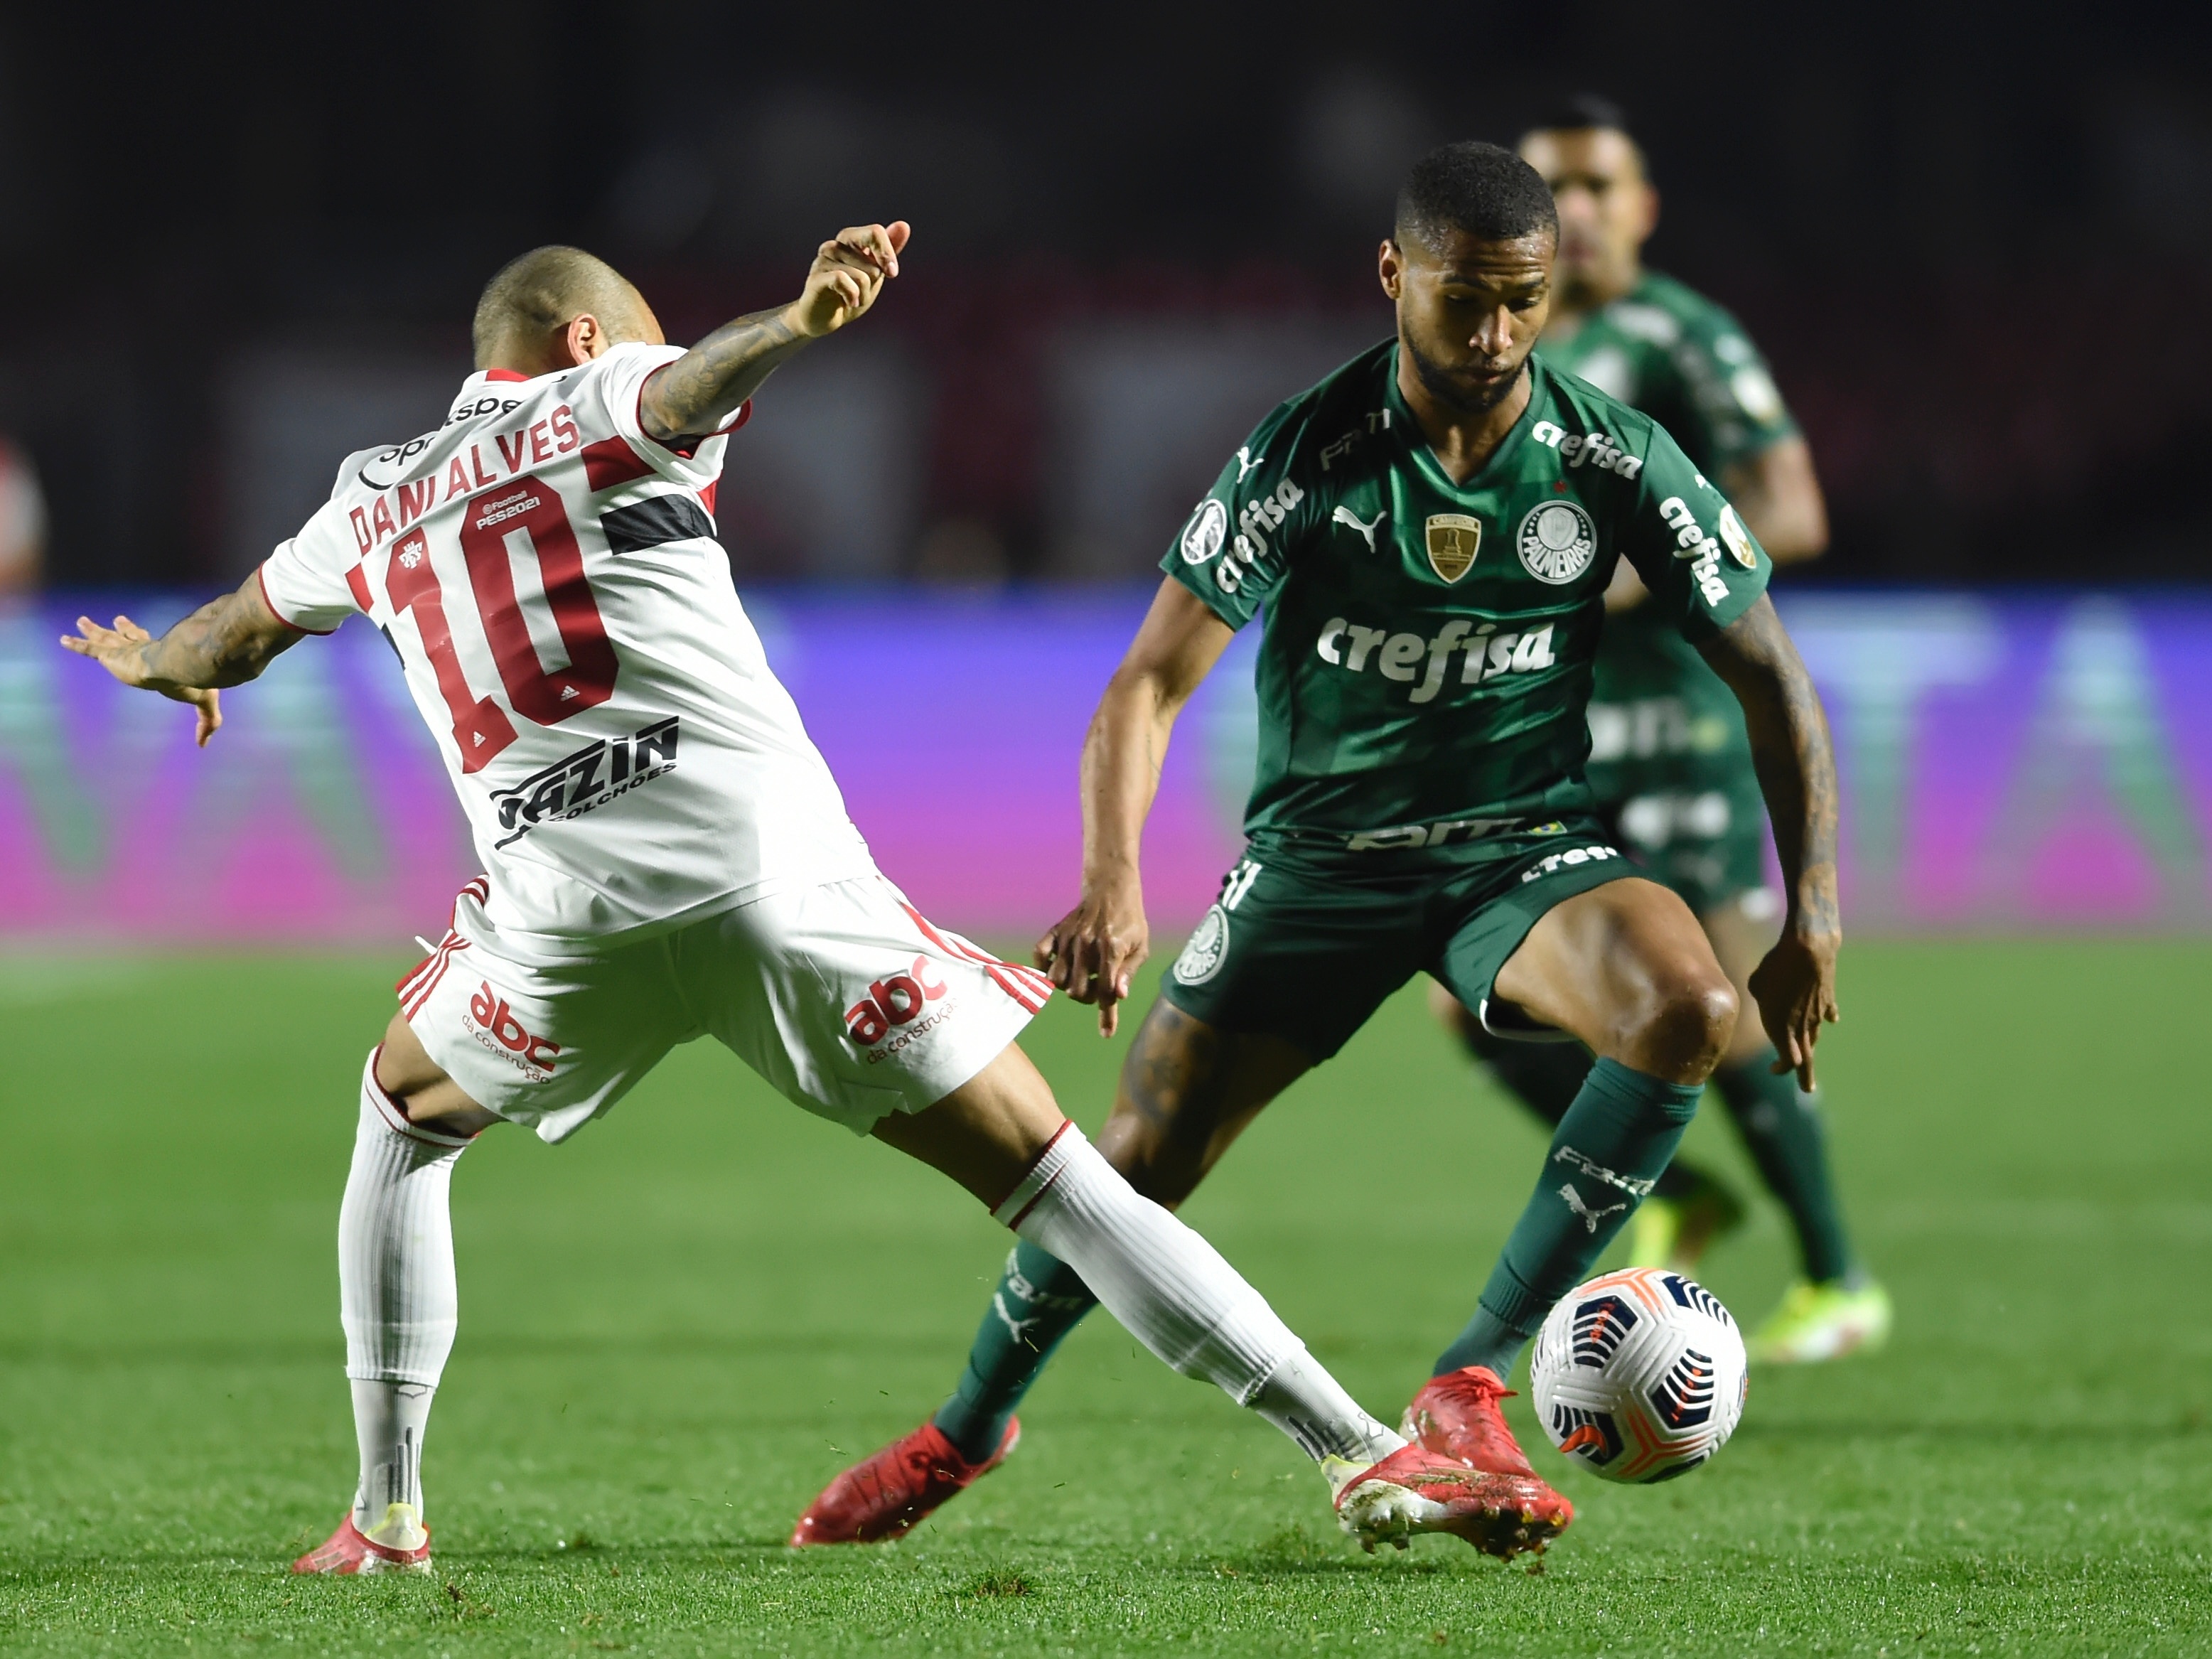 São Paulo x Palmeiras, um jogo de tirar o fôlego abre as quartas de final -  CONMEBOL